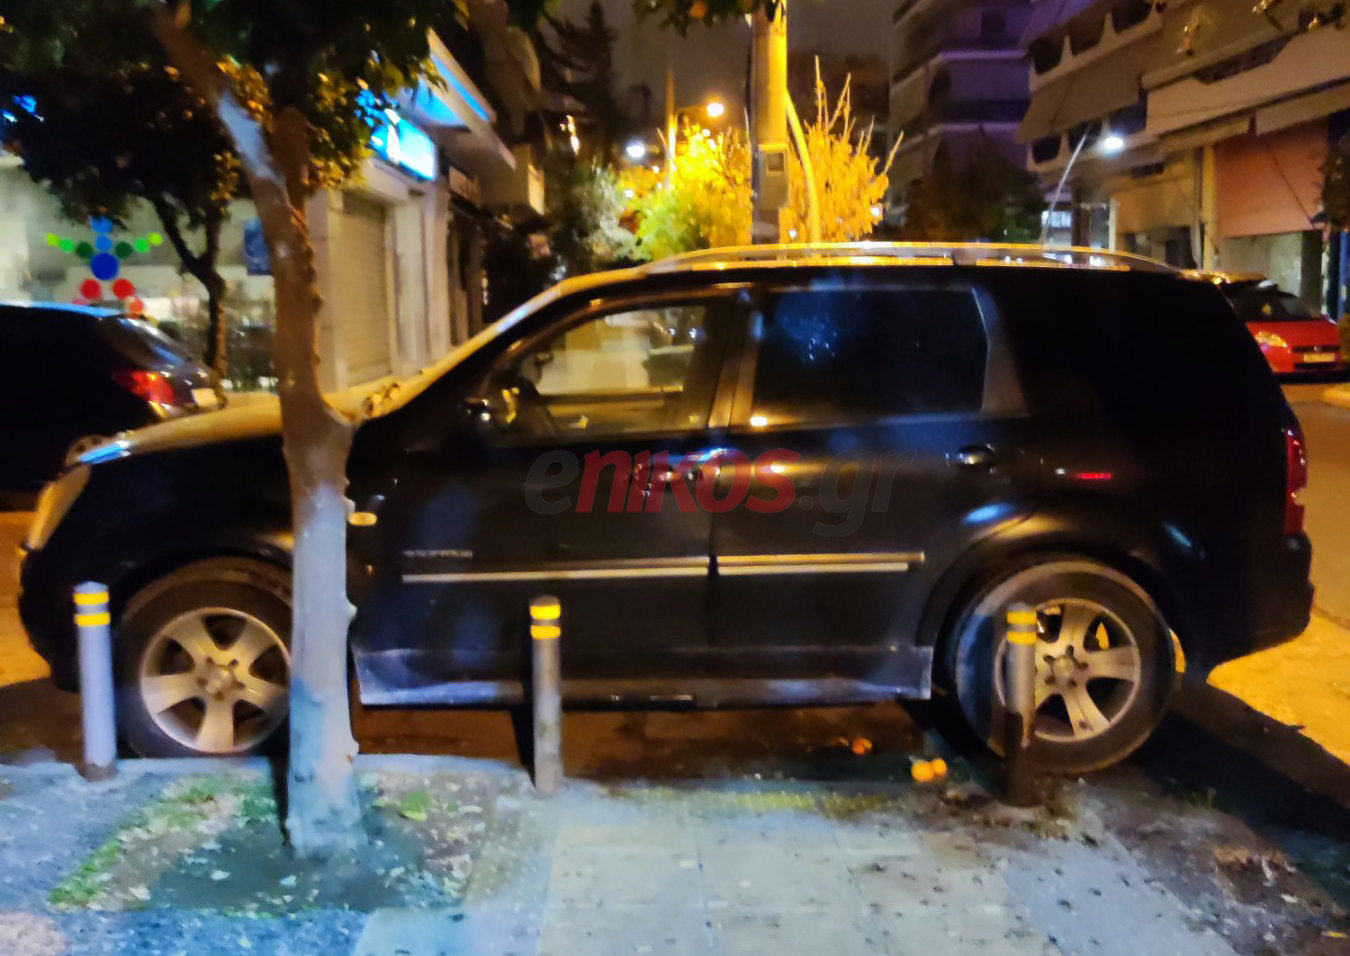 Άλλο ένα παρκάρισμα ντροπής – Φωτογραφία αναγνώστη από τη Νίκαια